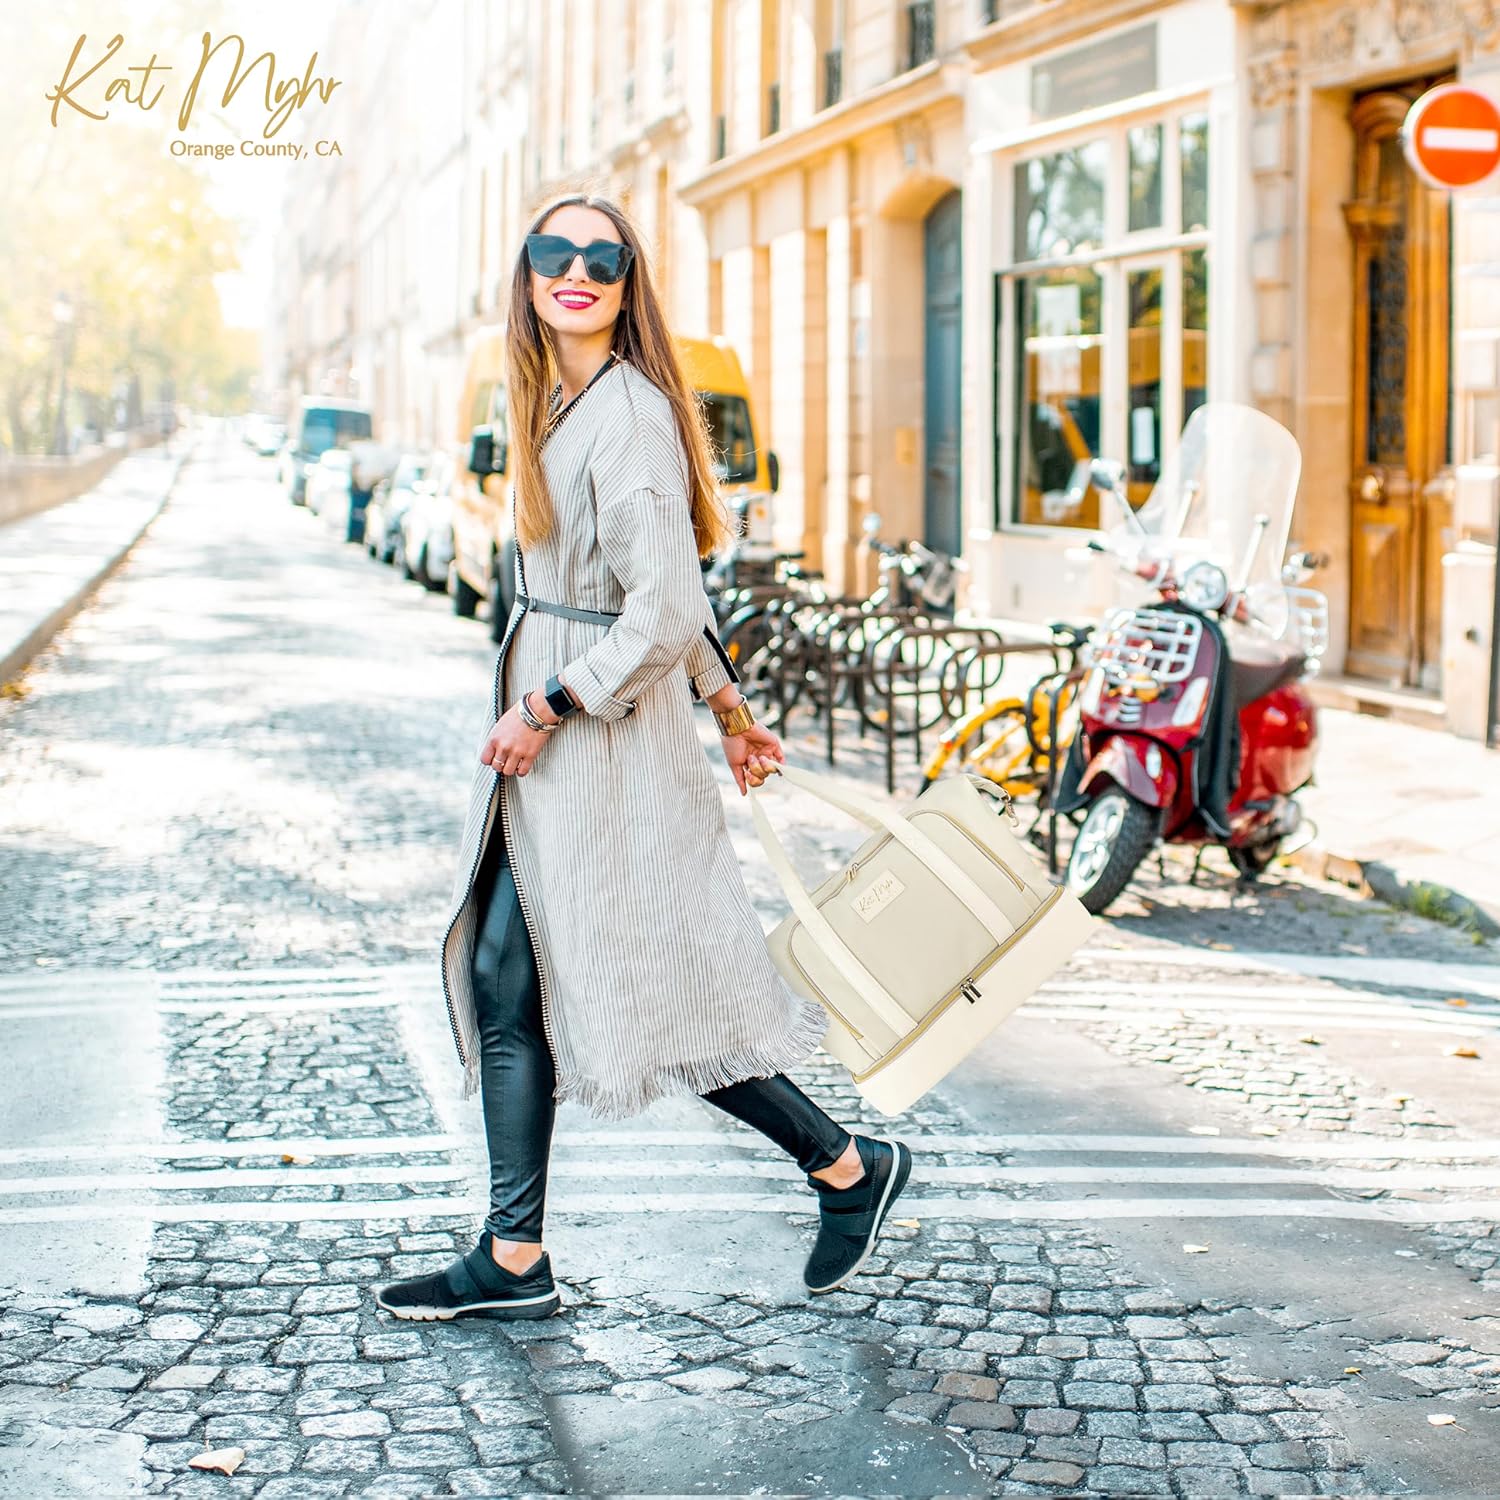 KAT MYHR Large Capacity Travel Cosmetic Bag - Off White – Kat Myhr